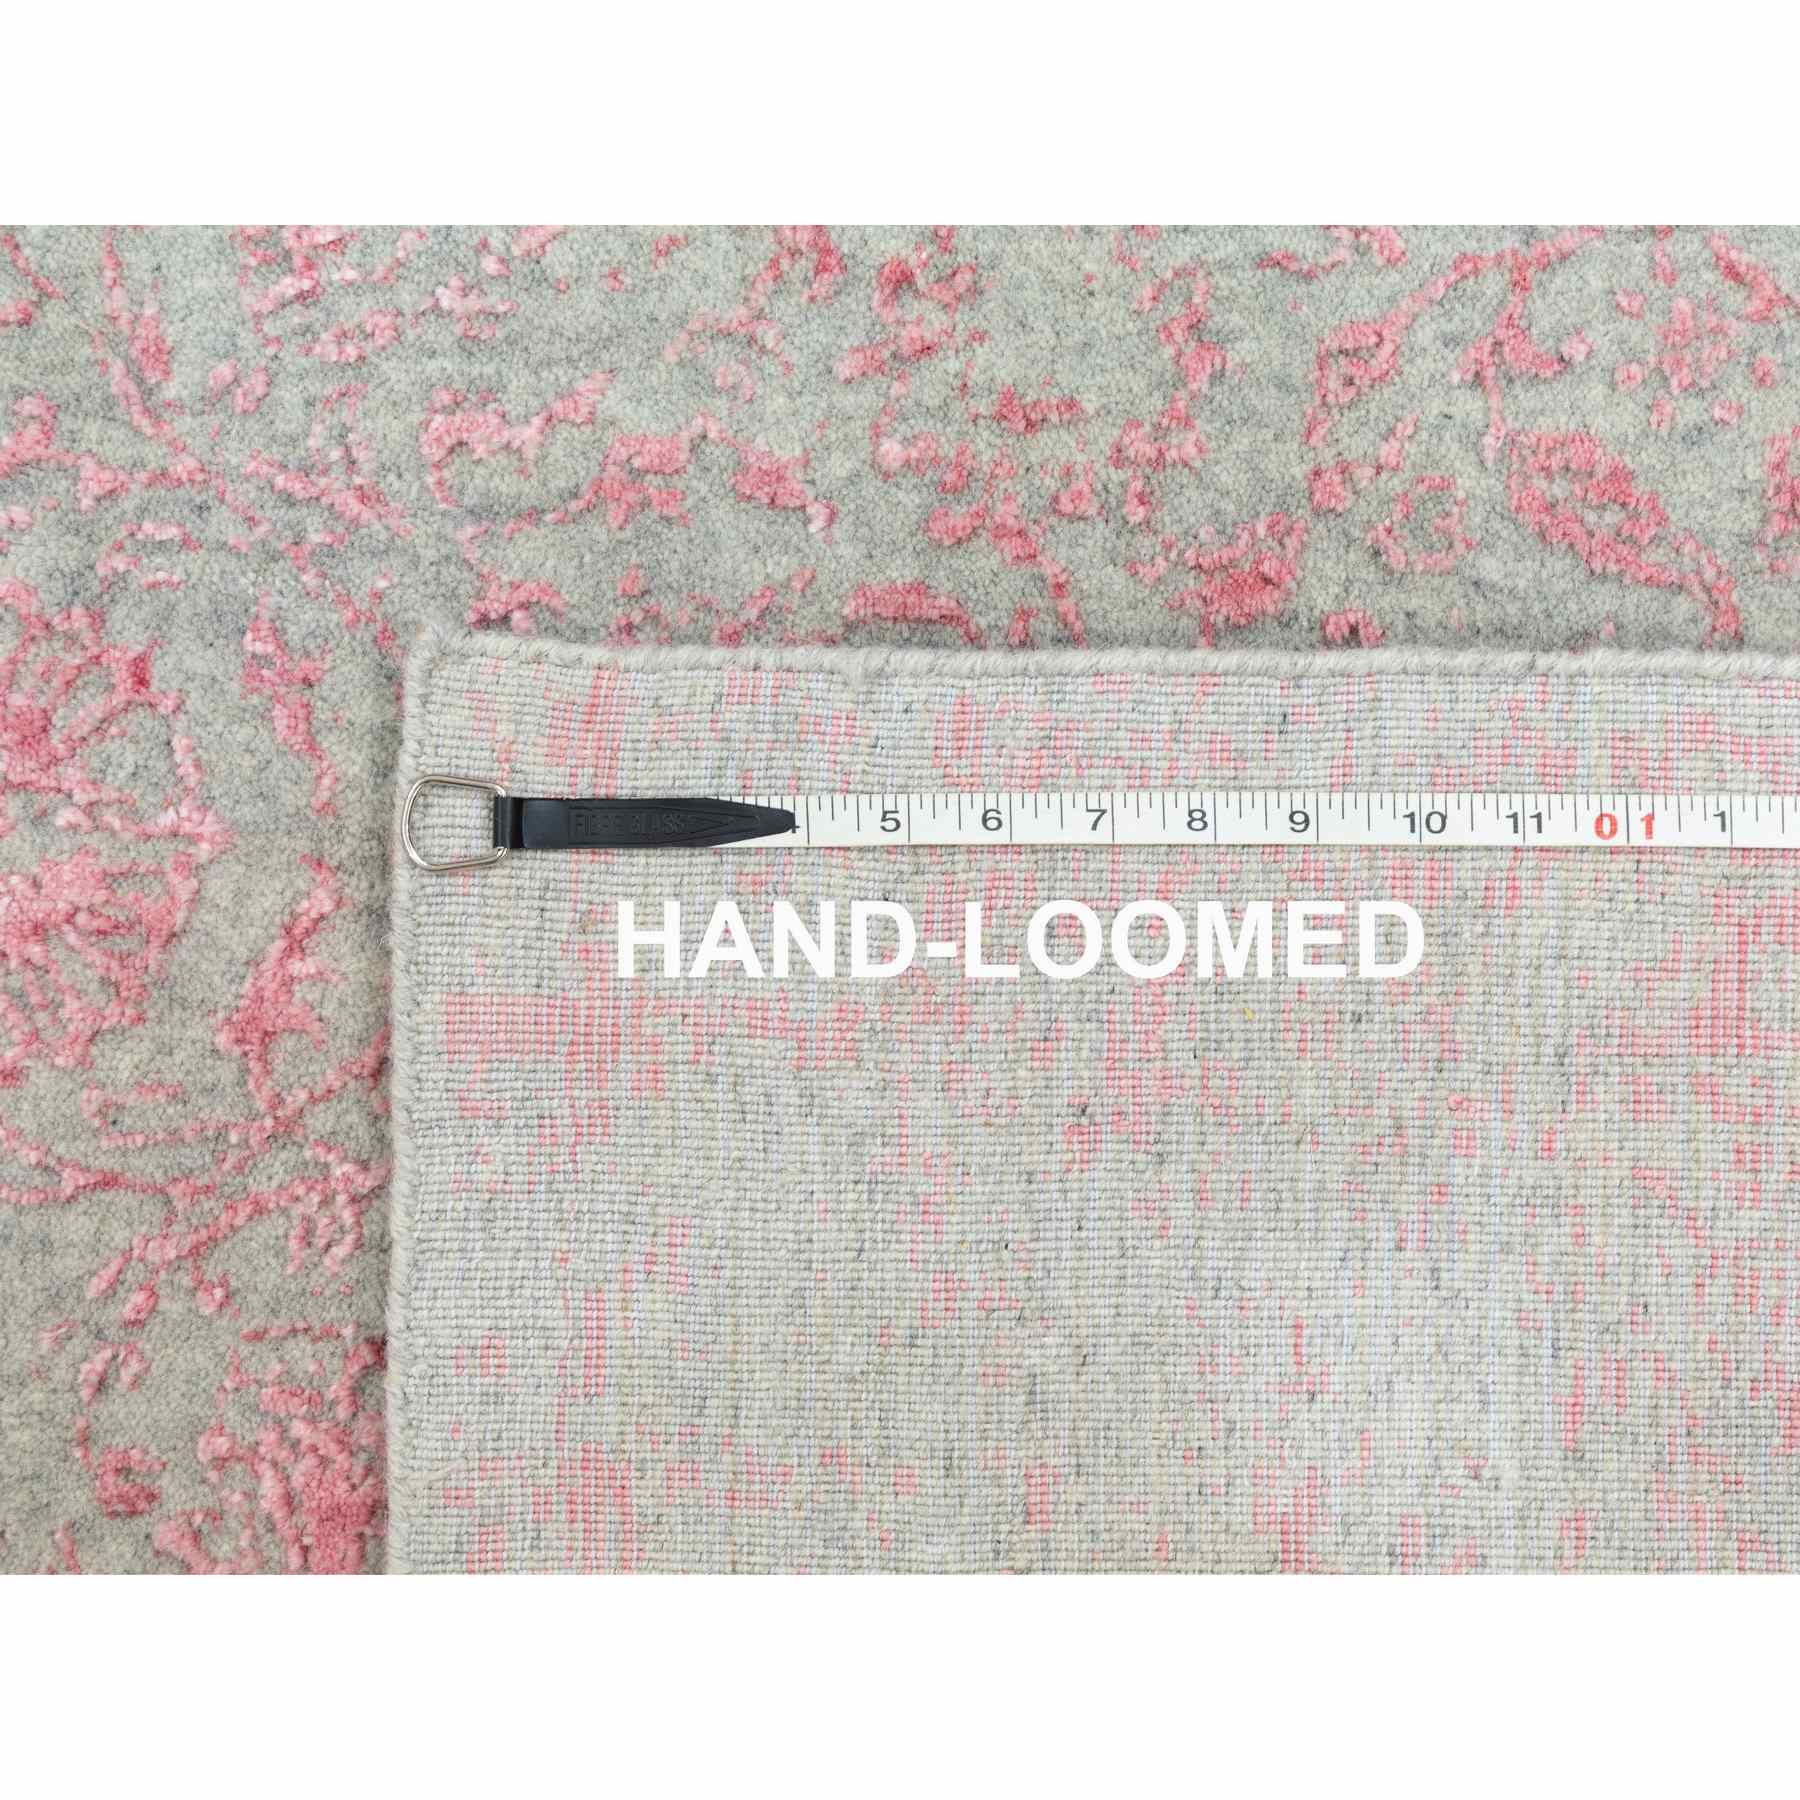 Hand-Loomed-Hand-Loomed-Rug-292945